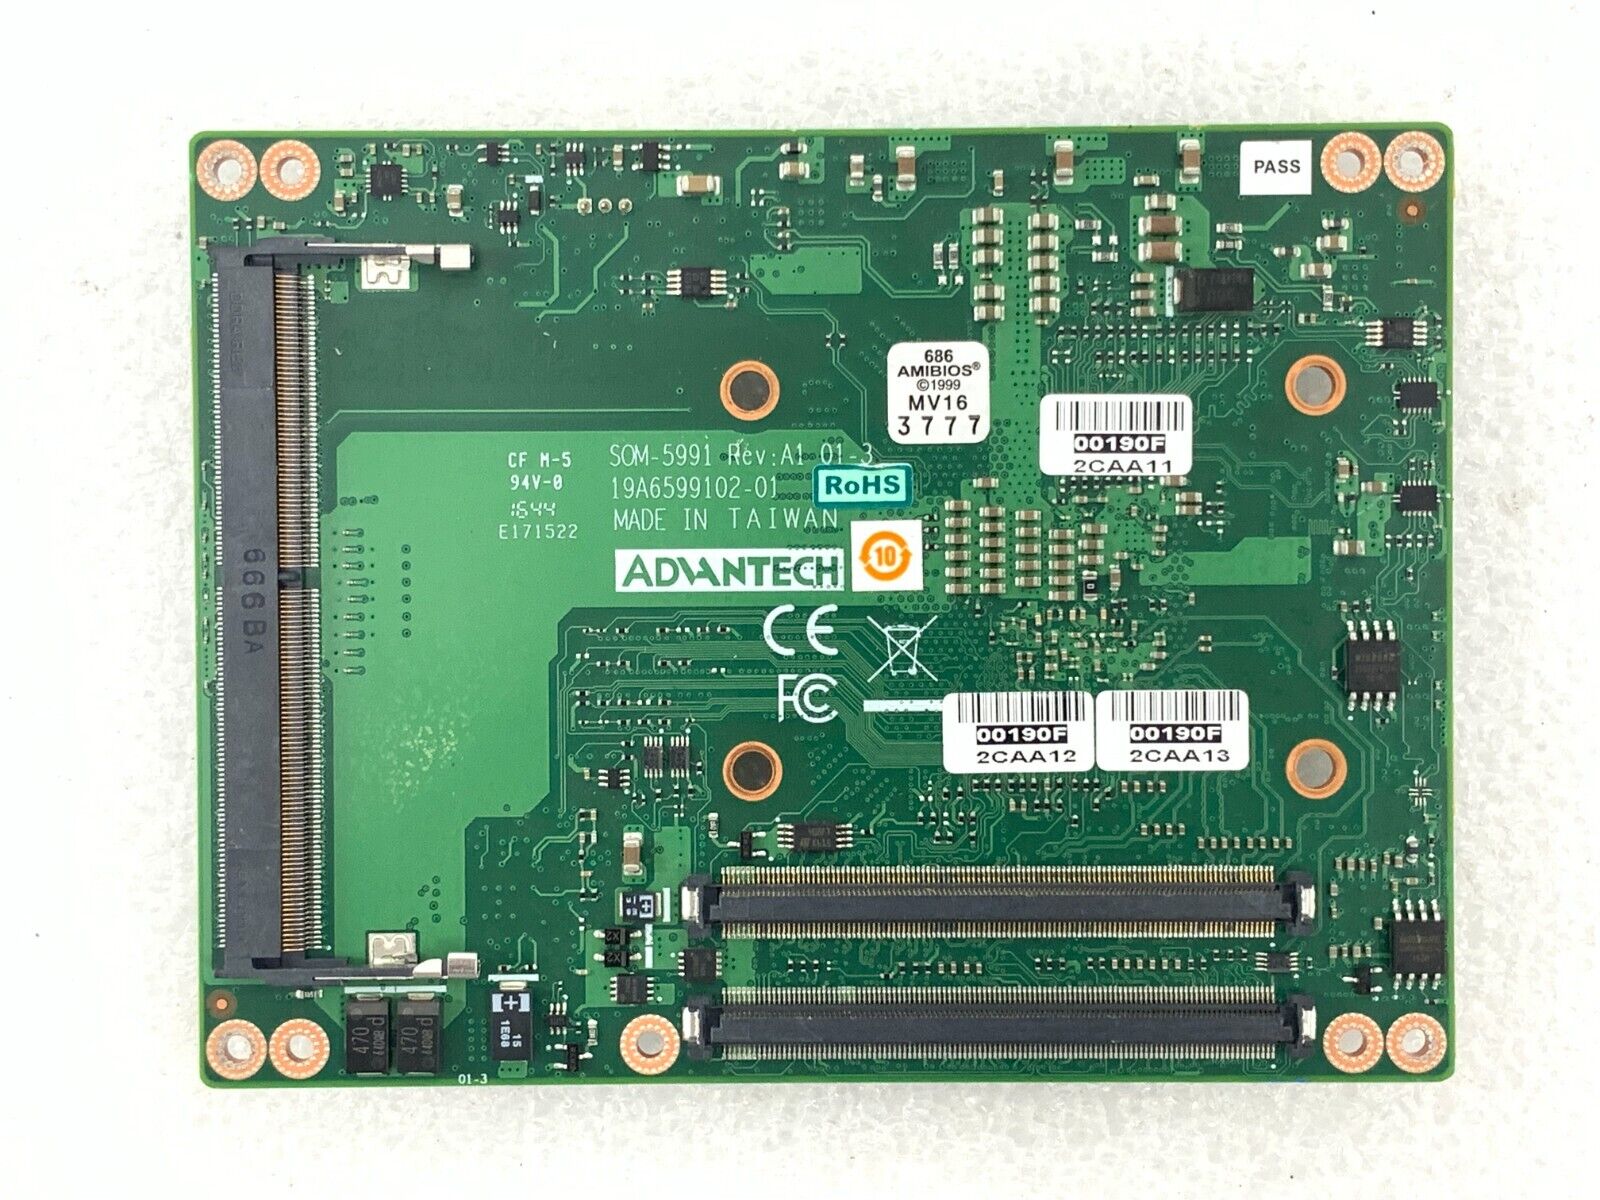 ADVANTECH COM-BASIC MODULE SOM-5991 with Intel Xeon D-1548 2.0GHz CPU NICE DEAL